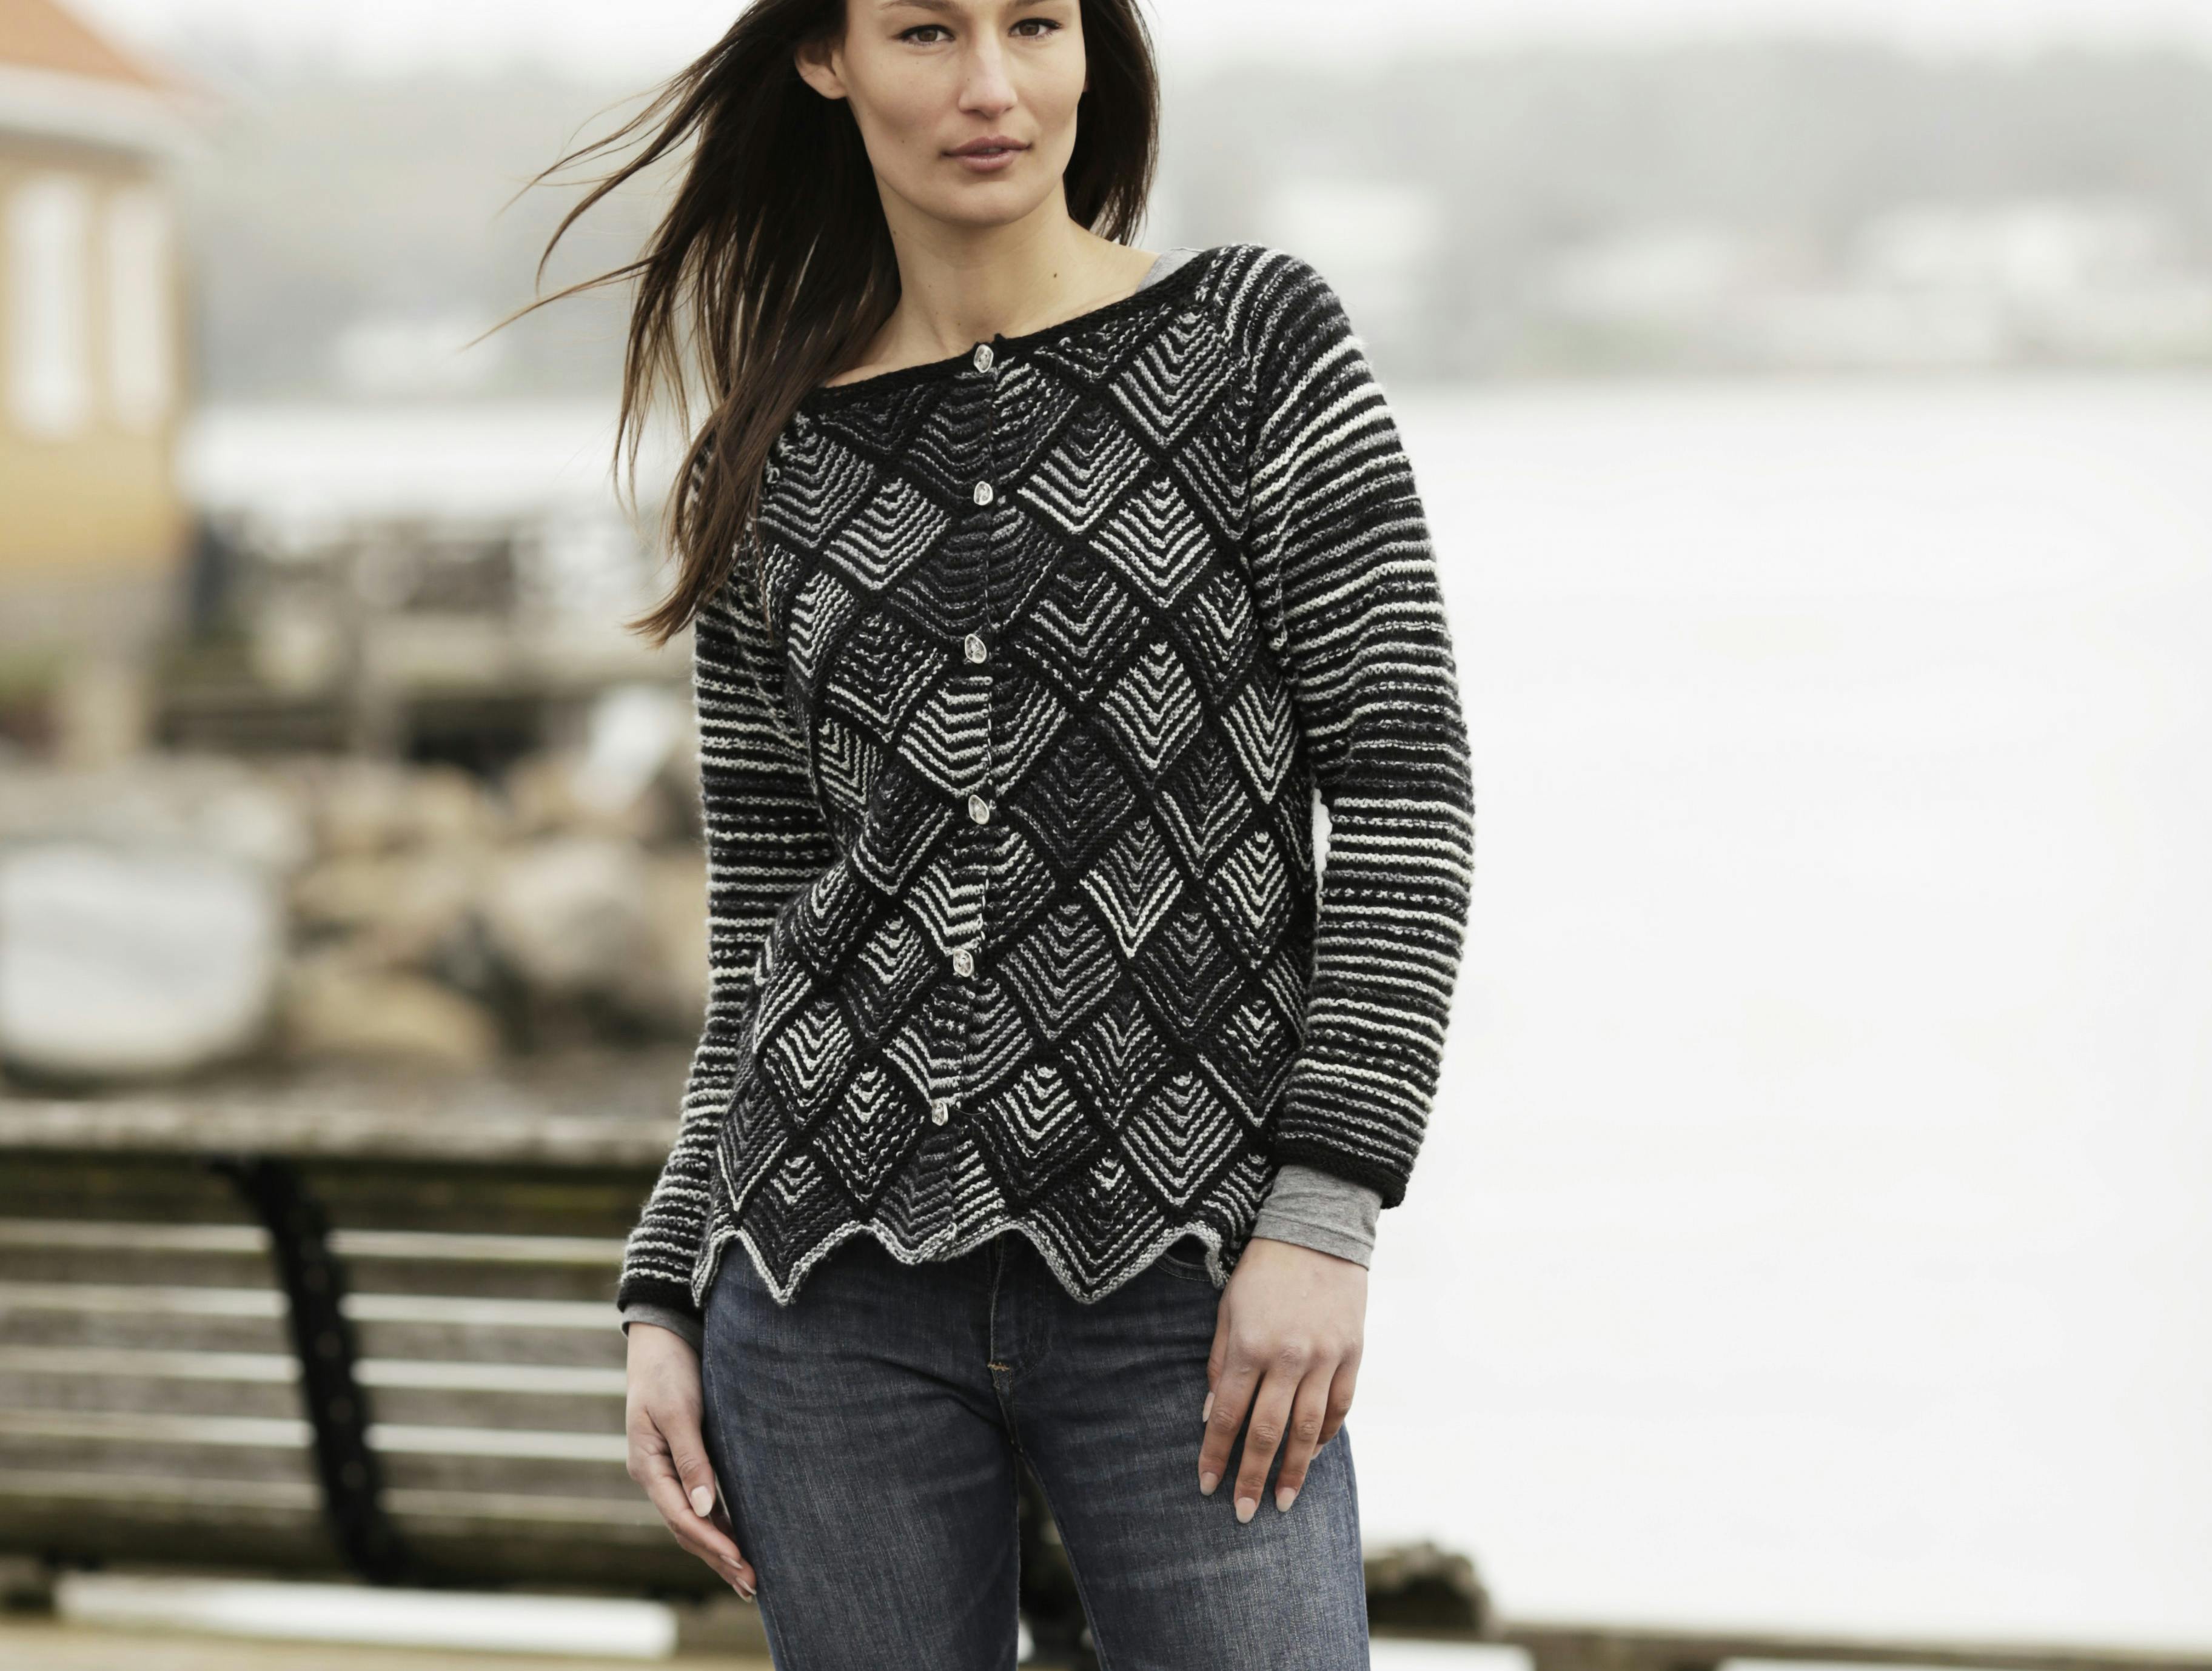 Strikkeopskrift: Sweater i dominobrik-mønster